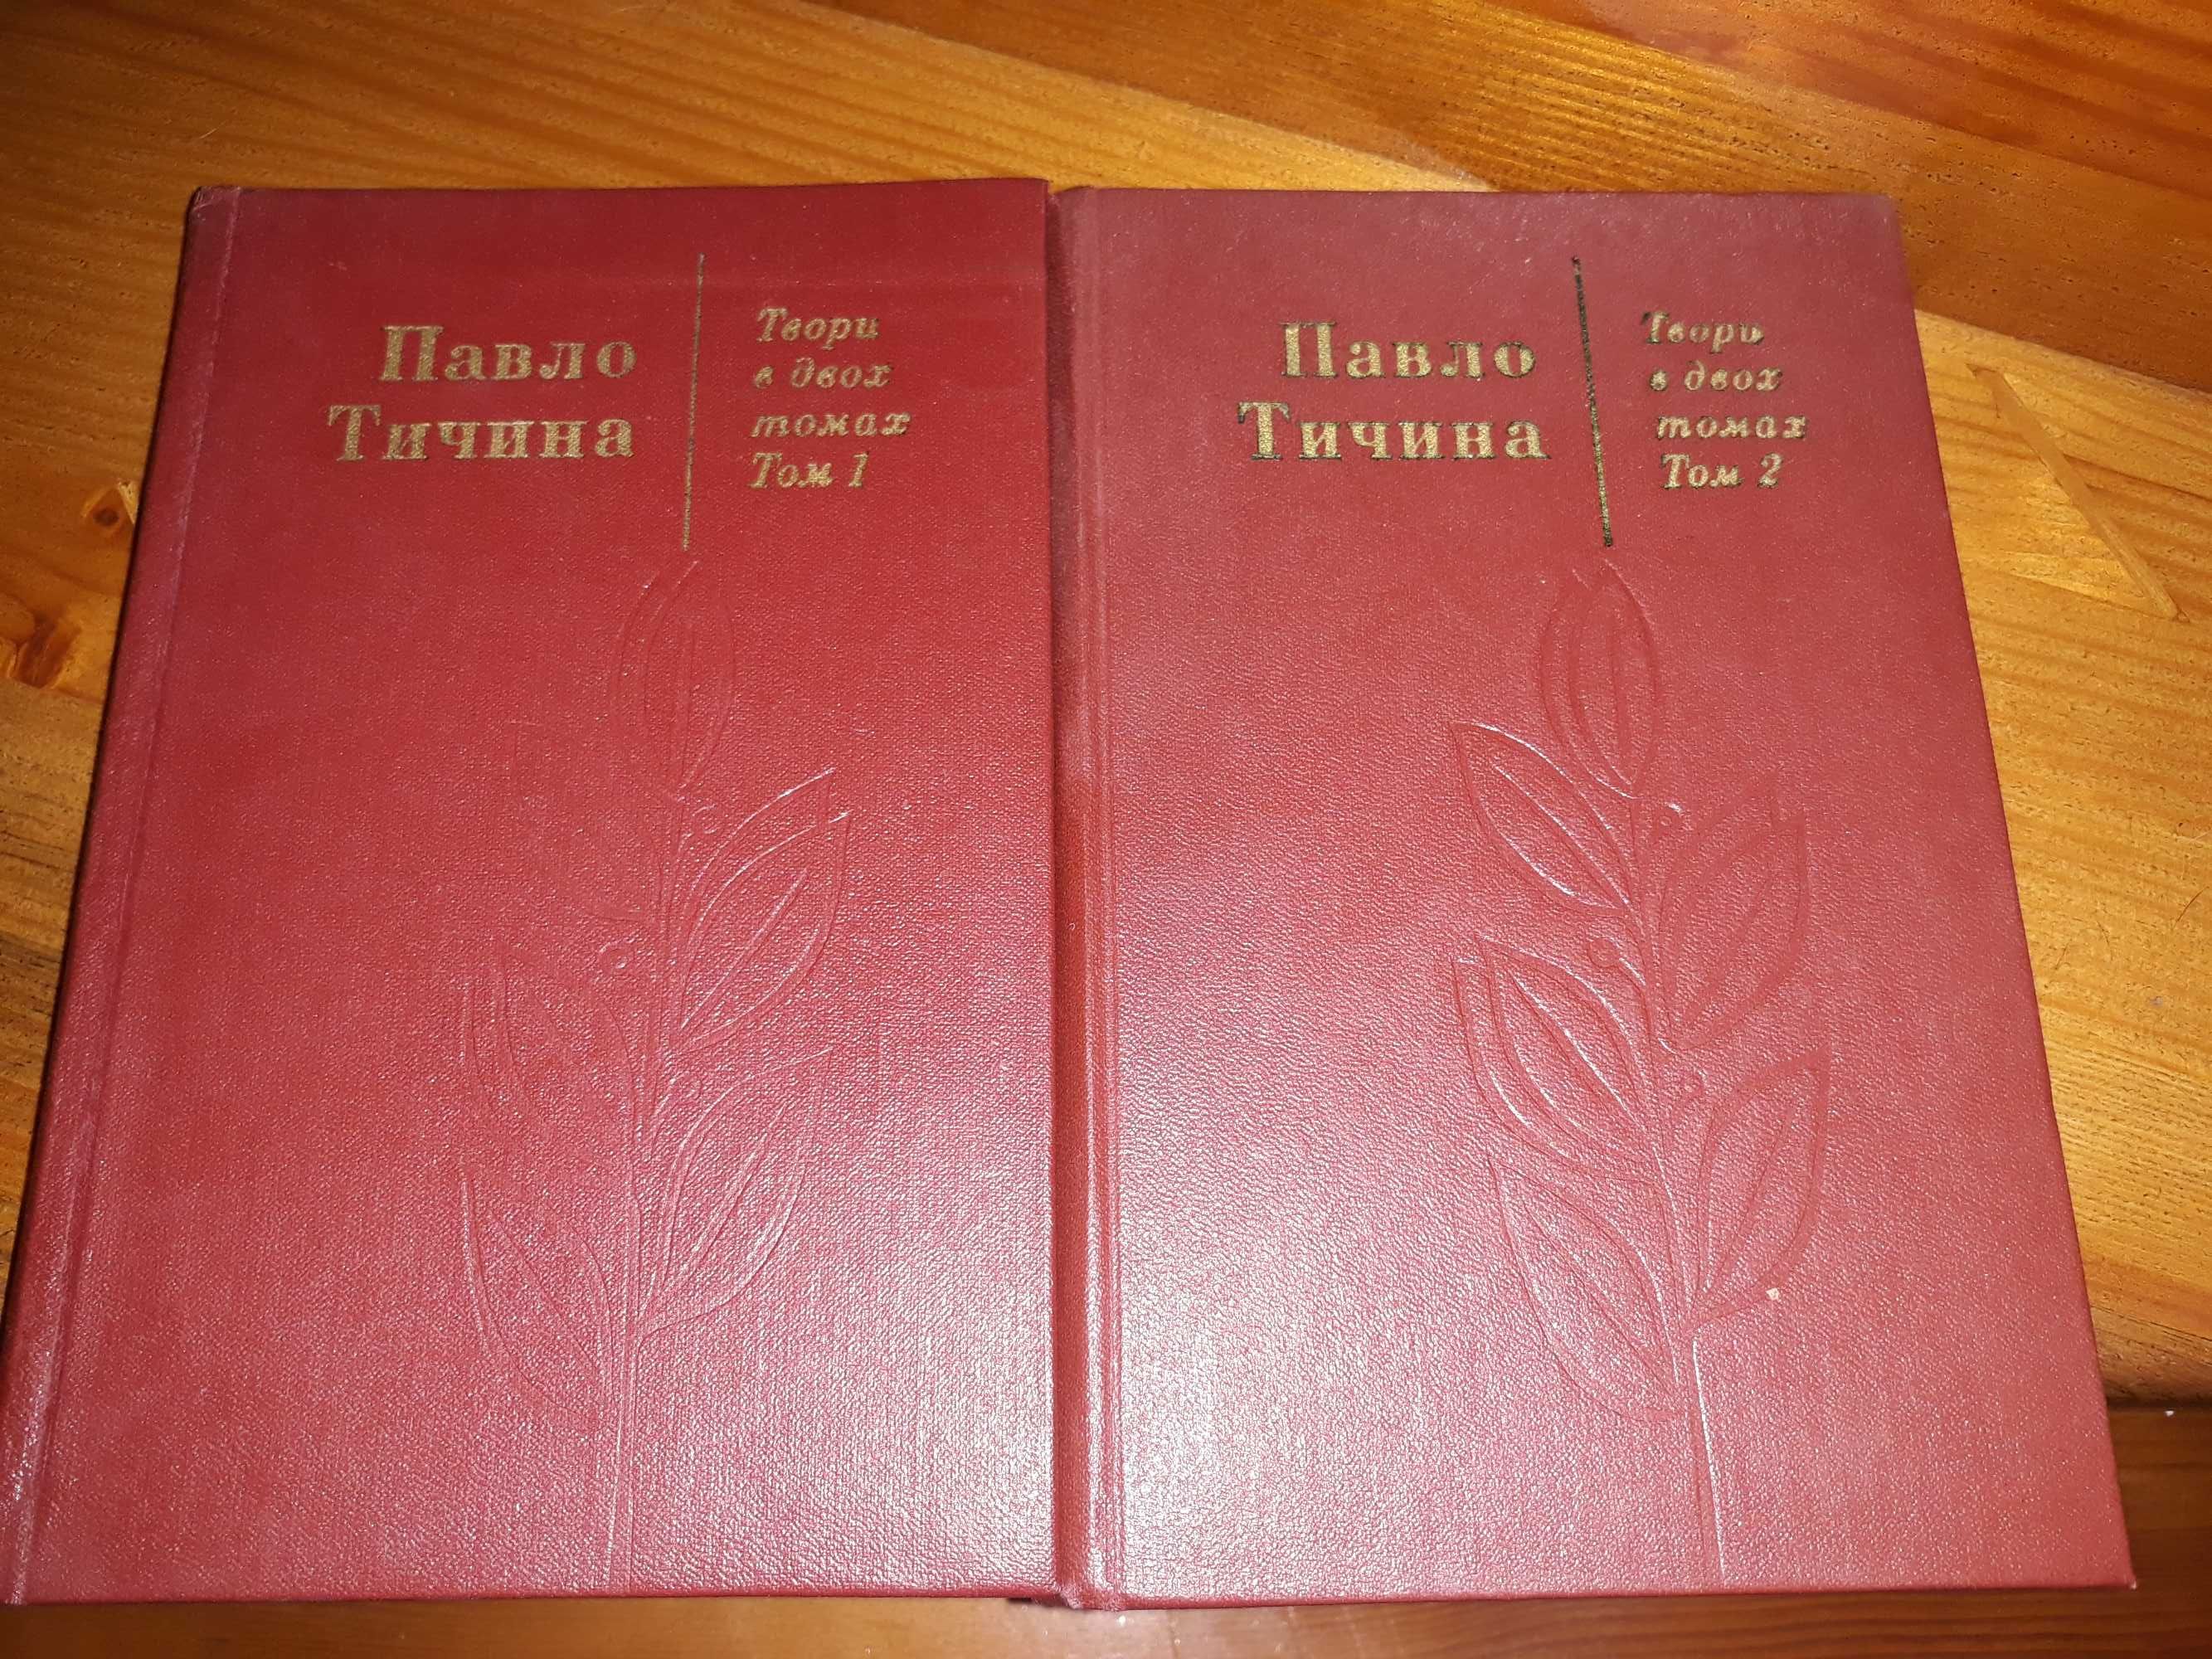 П.Тичина твори в двох томах, 1976 року